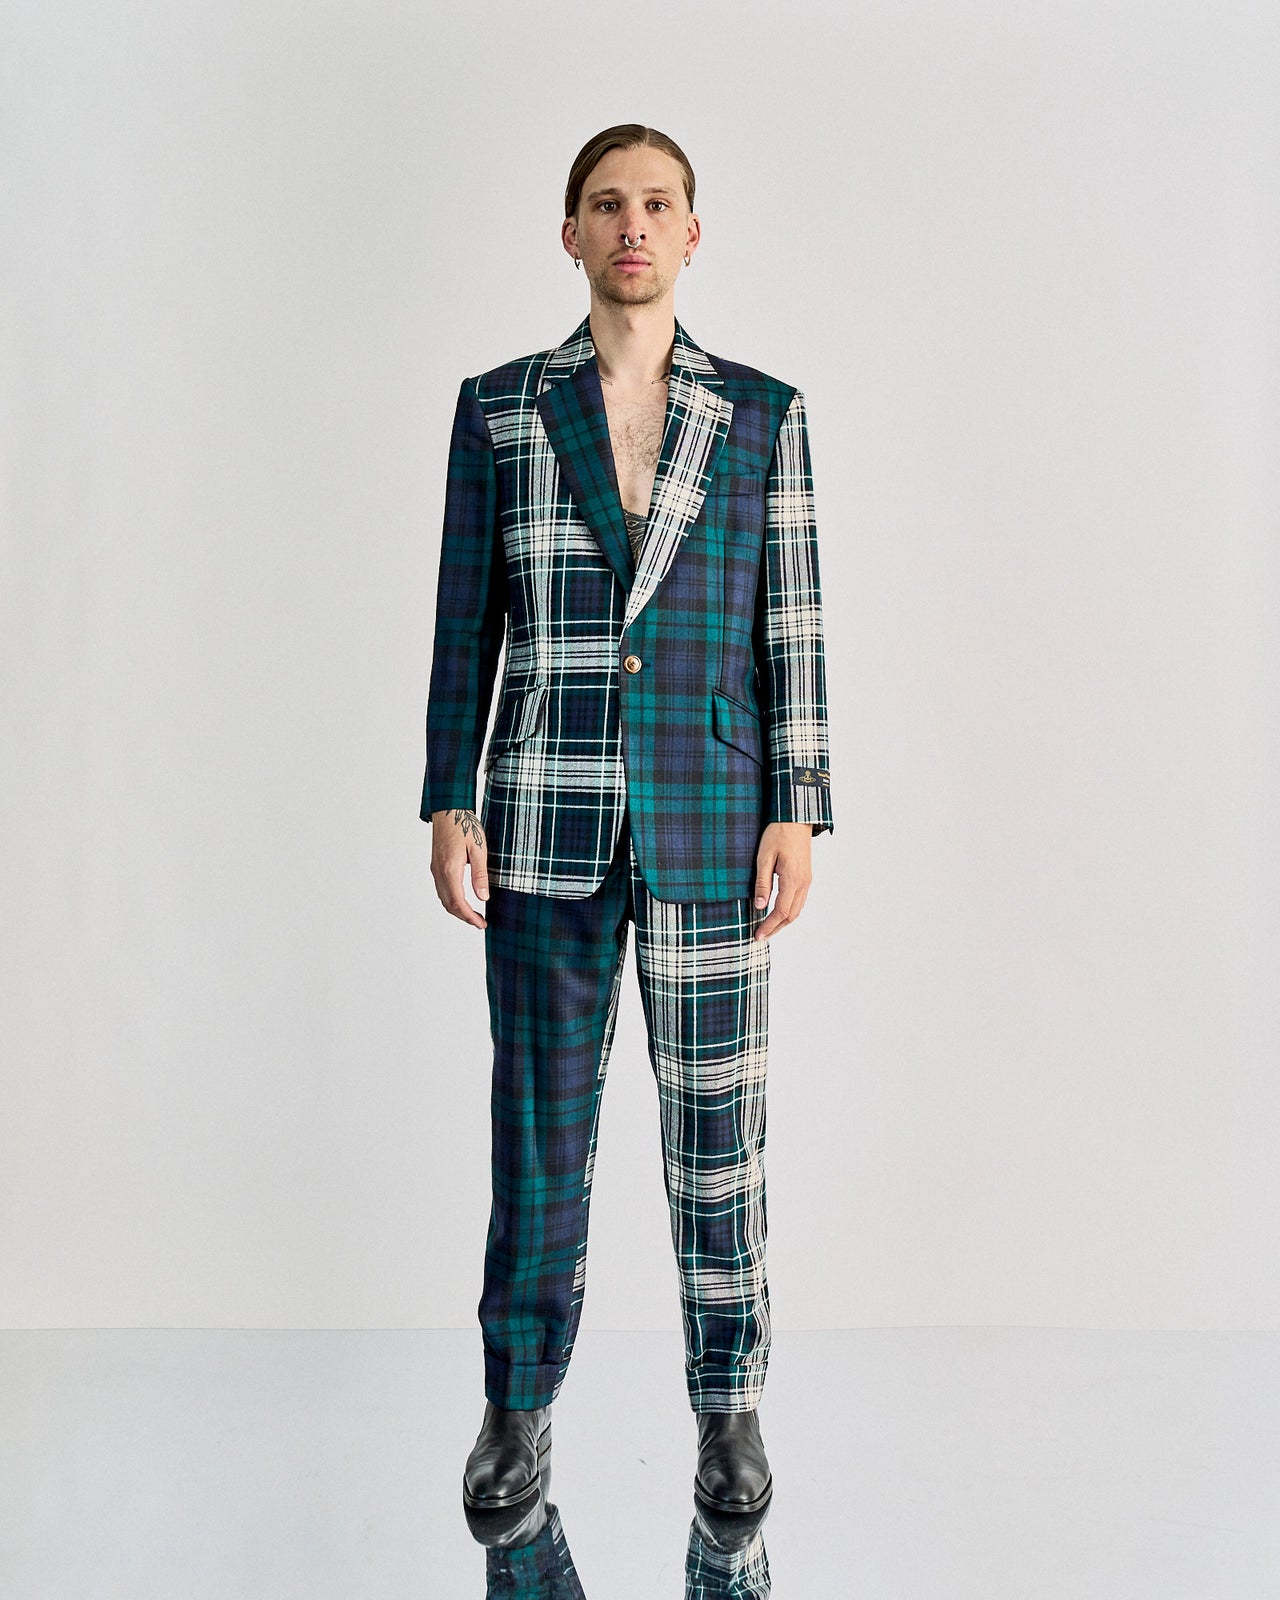 Vivienne Westwood Man AW 2012 Runway Look 44 2-piece suit